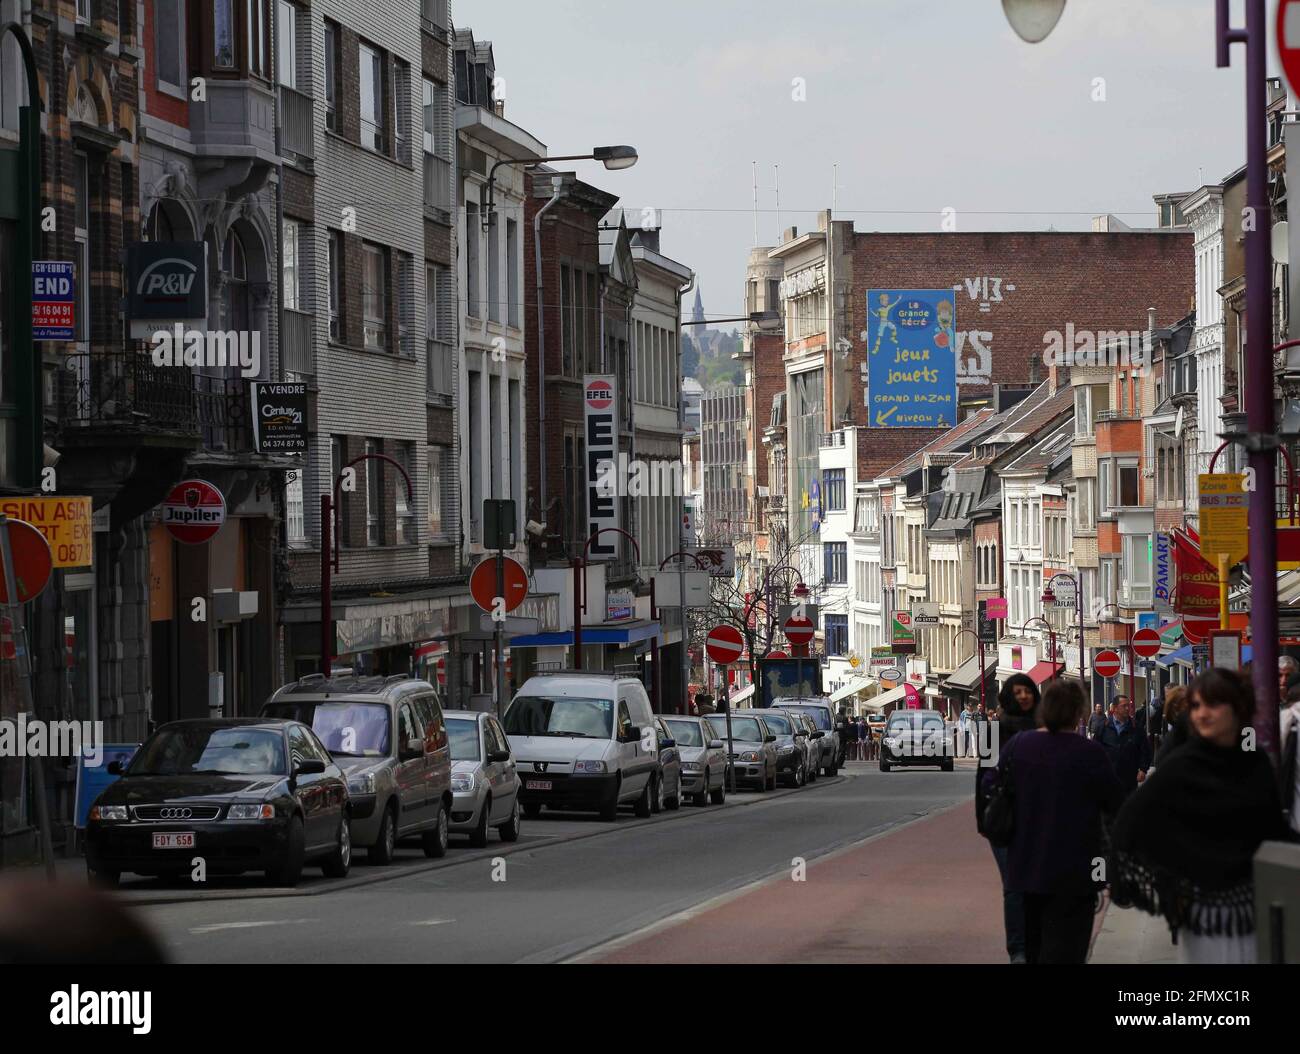 Verviers, Stadt in der Wallonie in Belgien, besticht u. a. durch seine Haeuserzeilen aus der Gruenderzeit. Verviers guerra bis weit nel 20. Jahrhundert Foto Stock